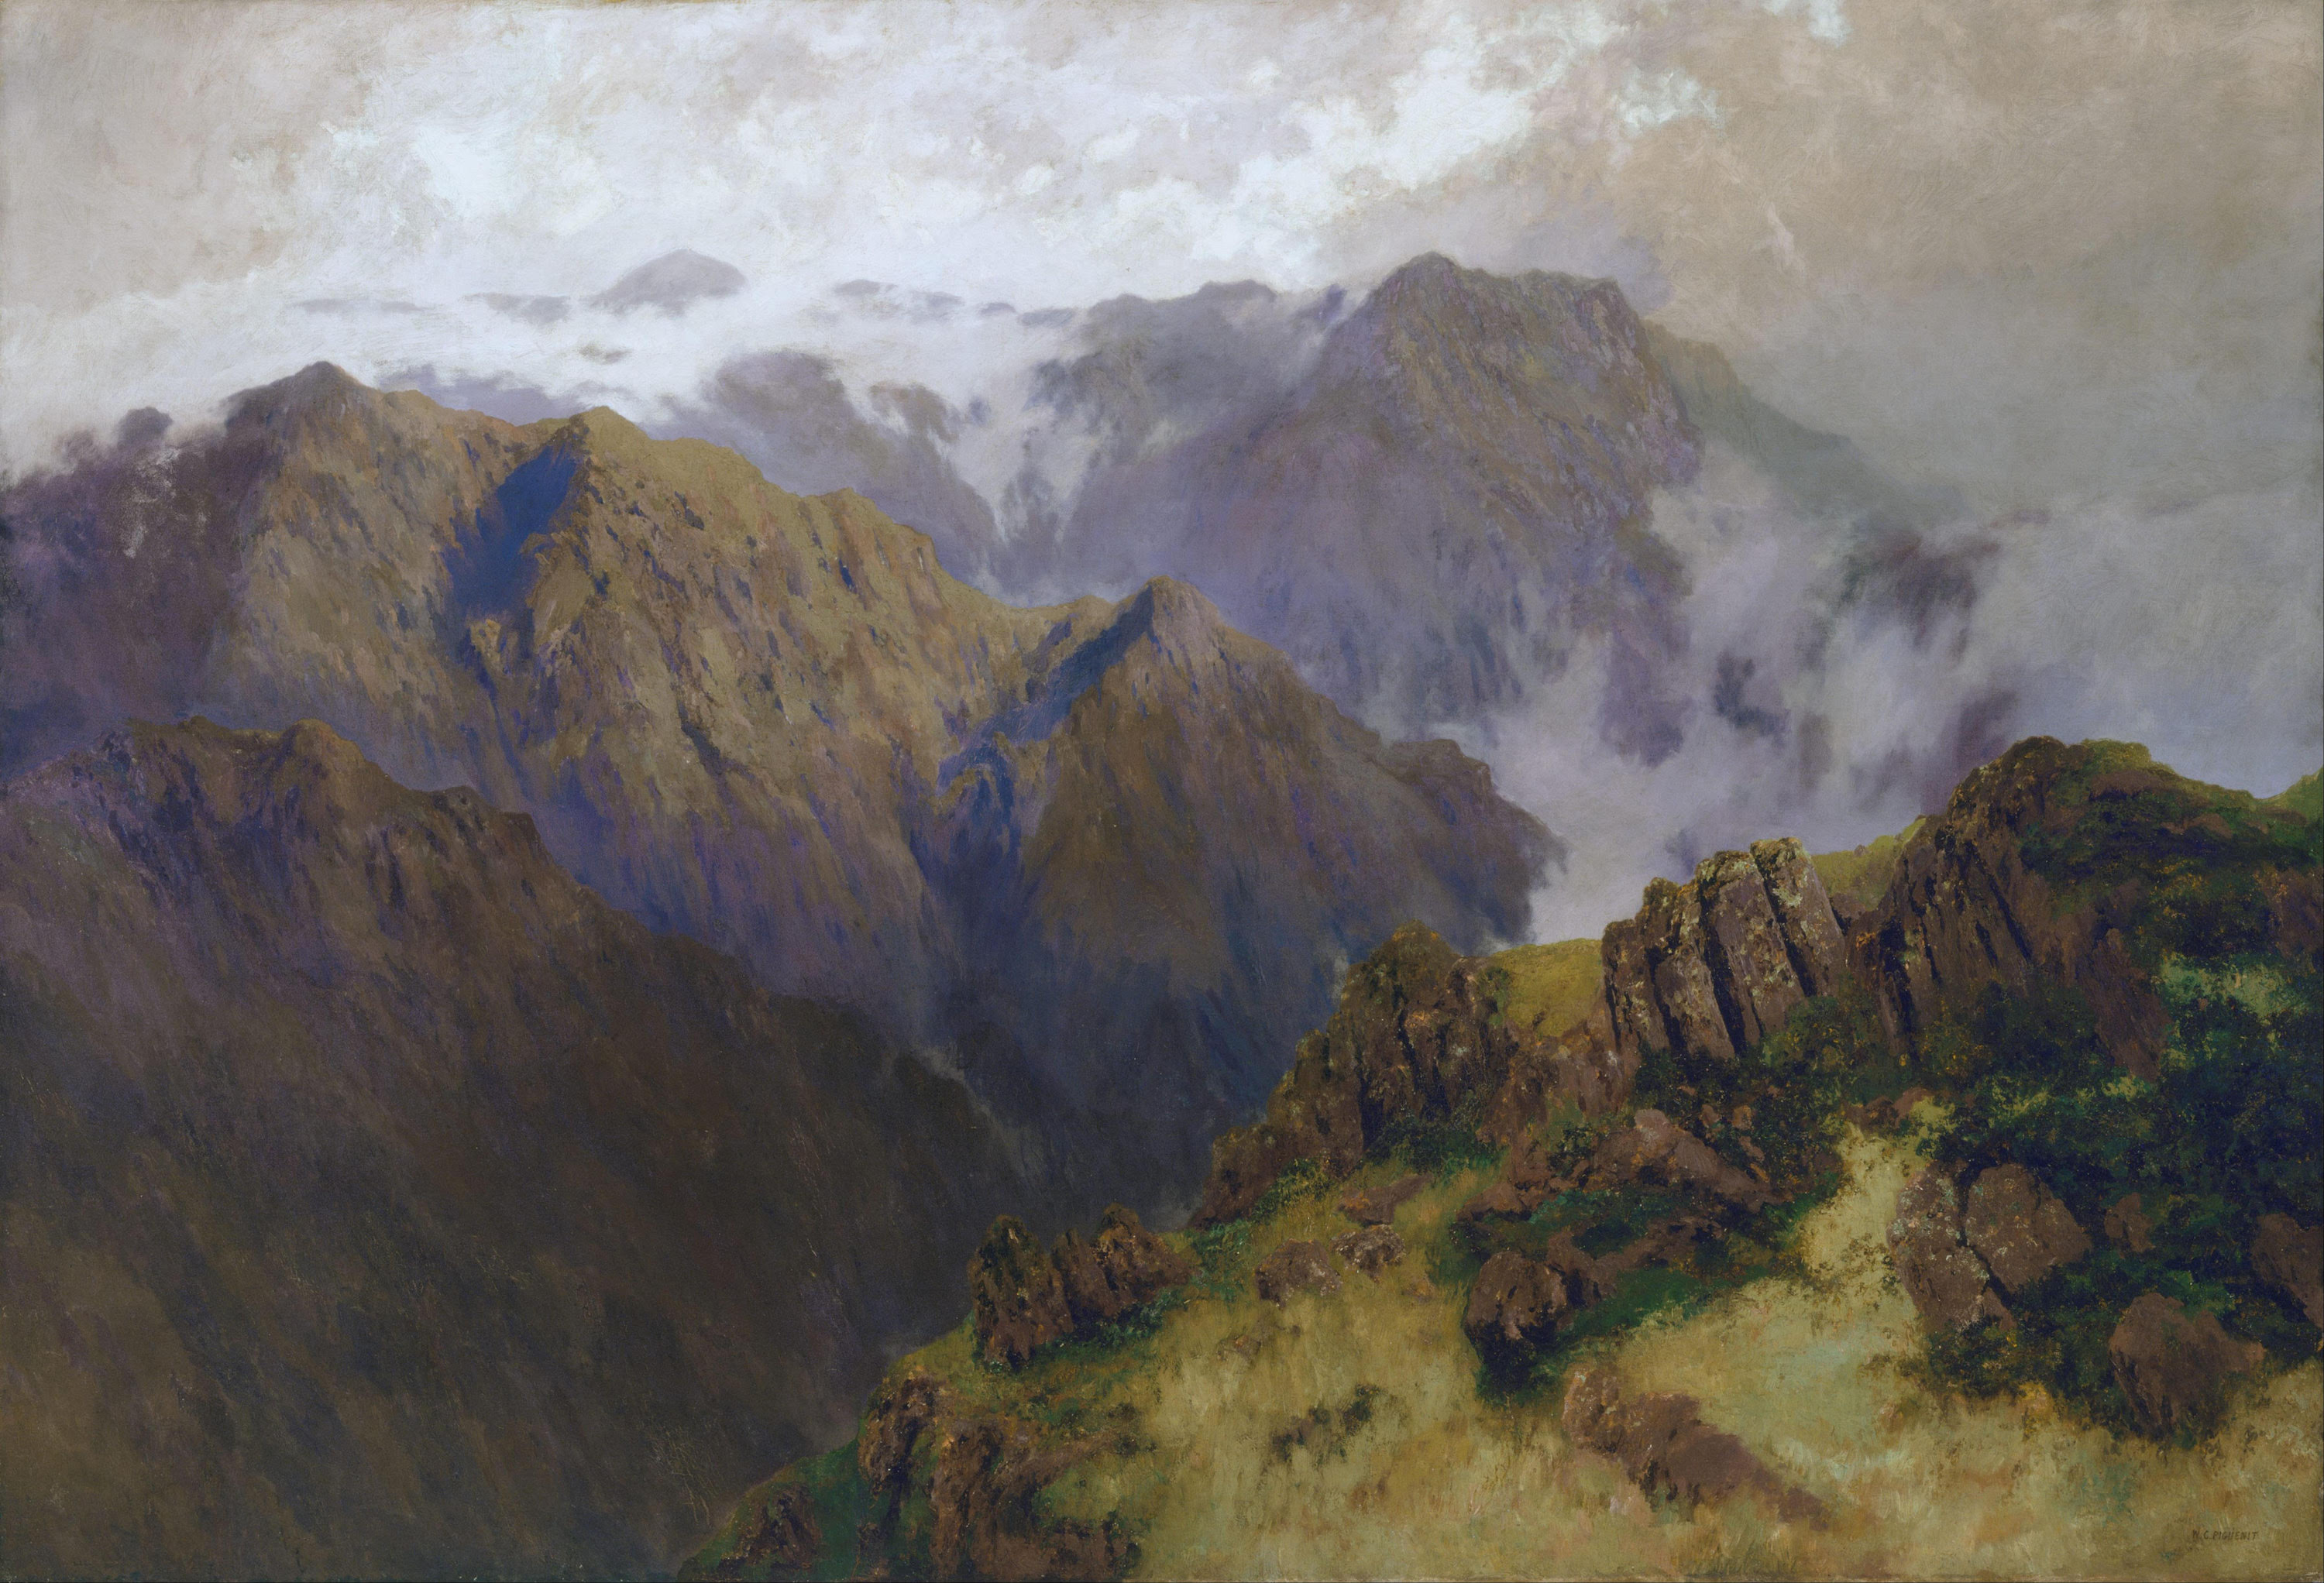 考修斯克山 by W​illiam Piguenit - 1903 - 179.2 x 261.6 cm 